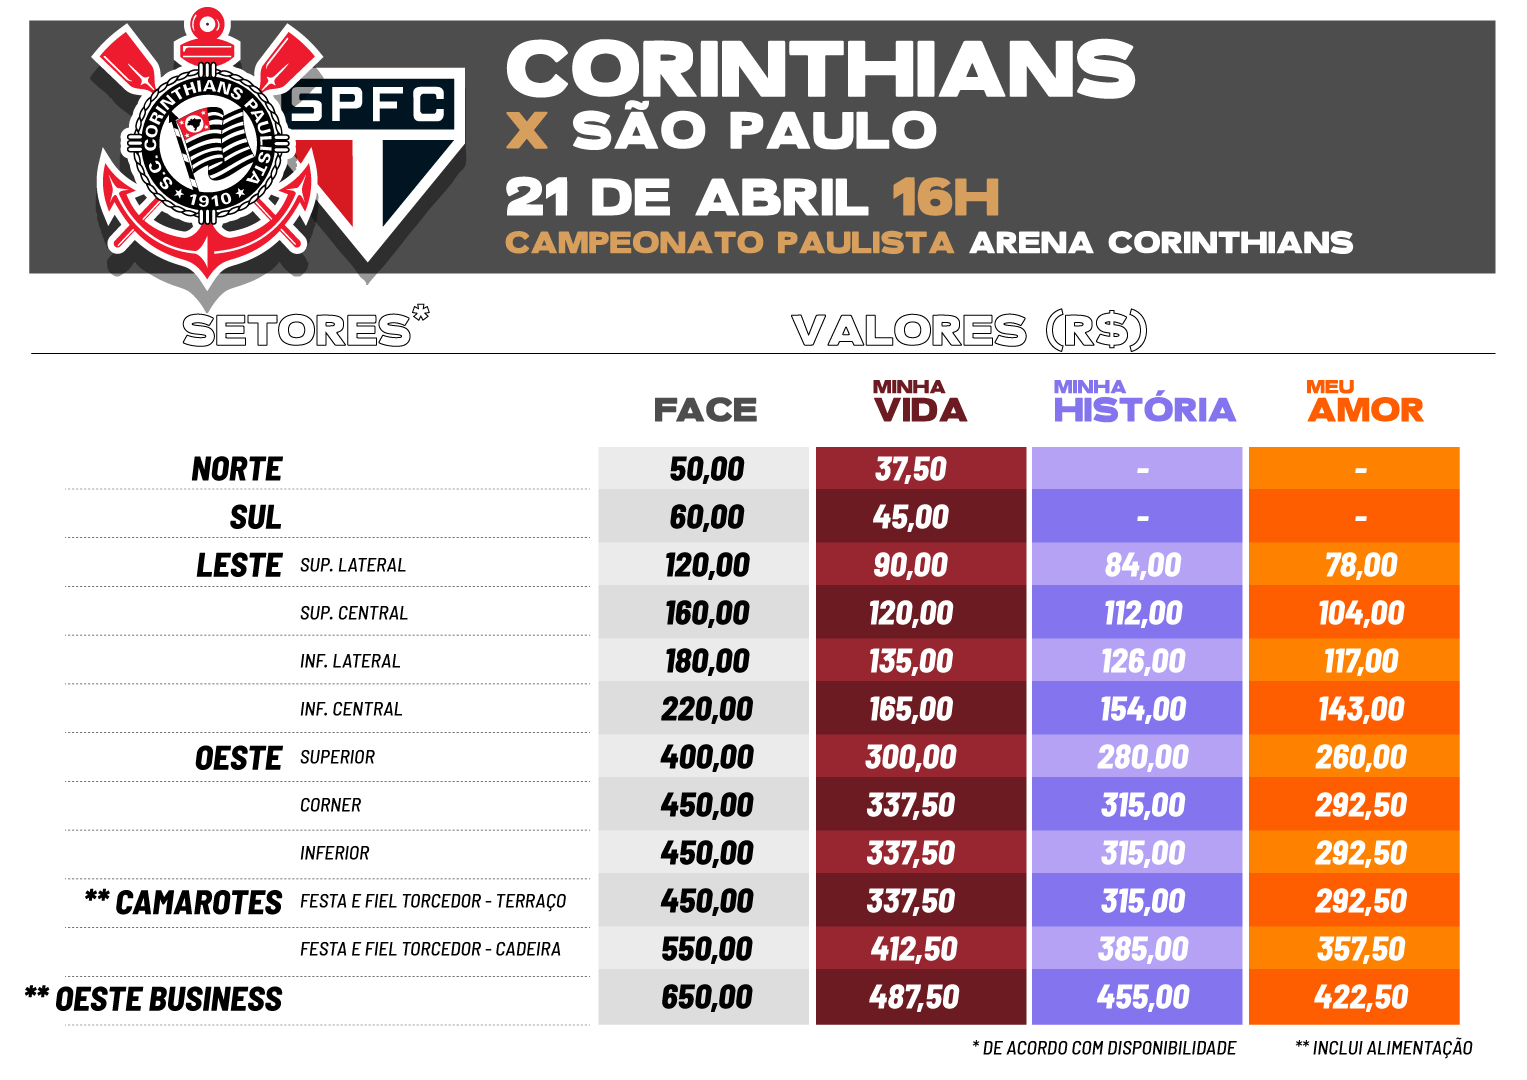 Corinthians anuncia troca de ingressos por brinquedos em final da Copa  Paulista